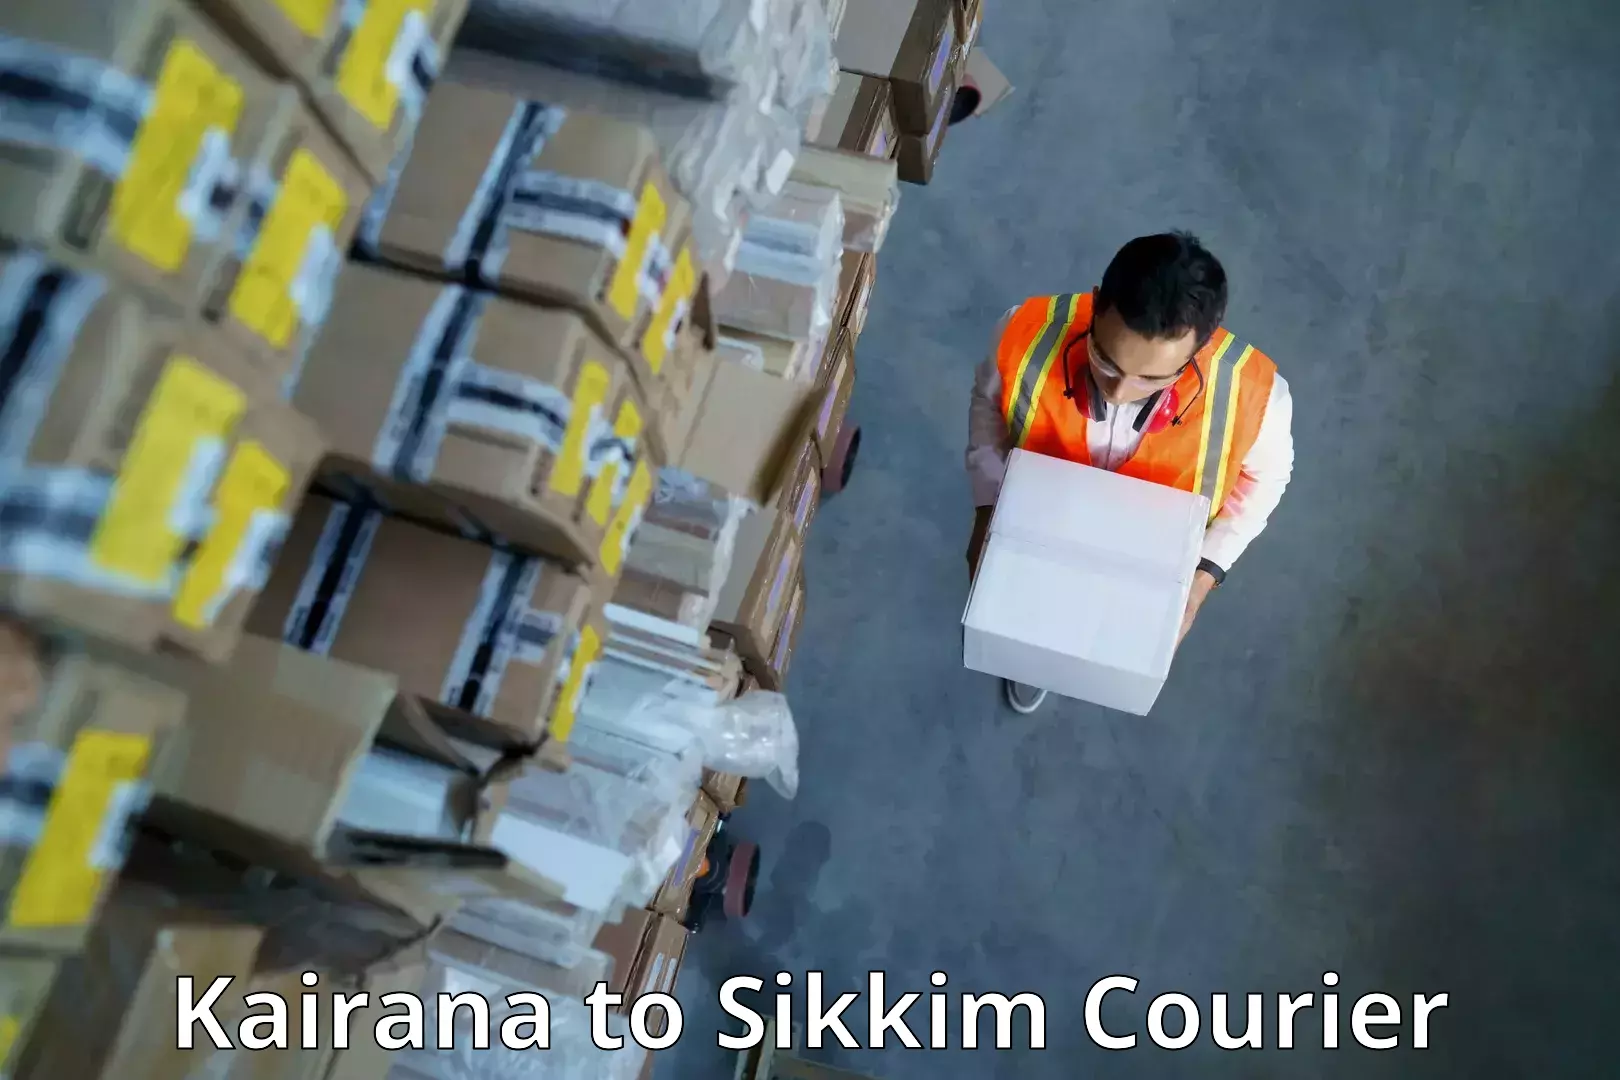 Seamless shipping experience Kairana to Ranipool